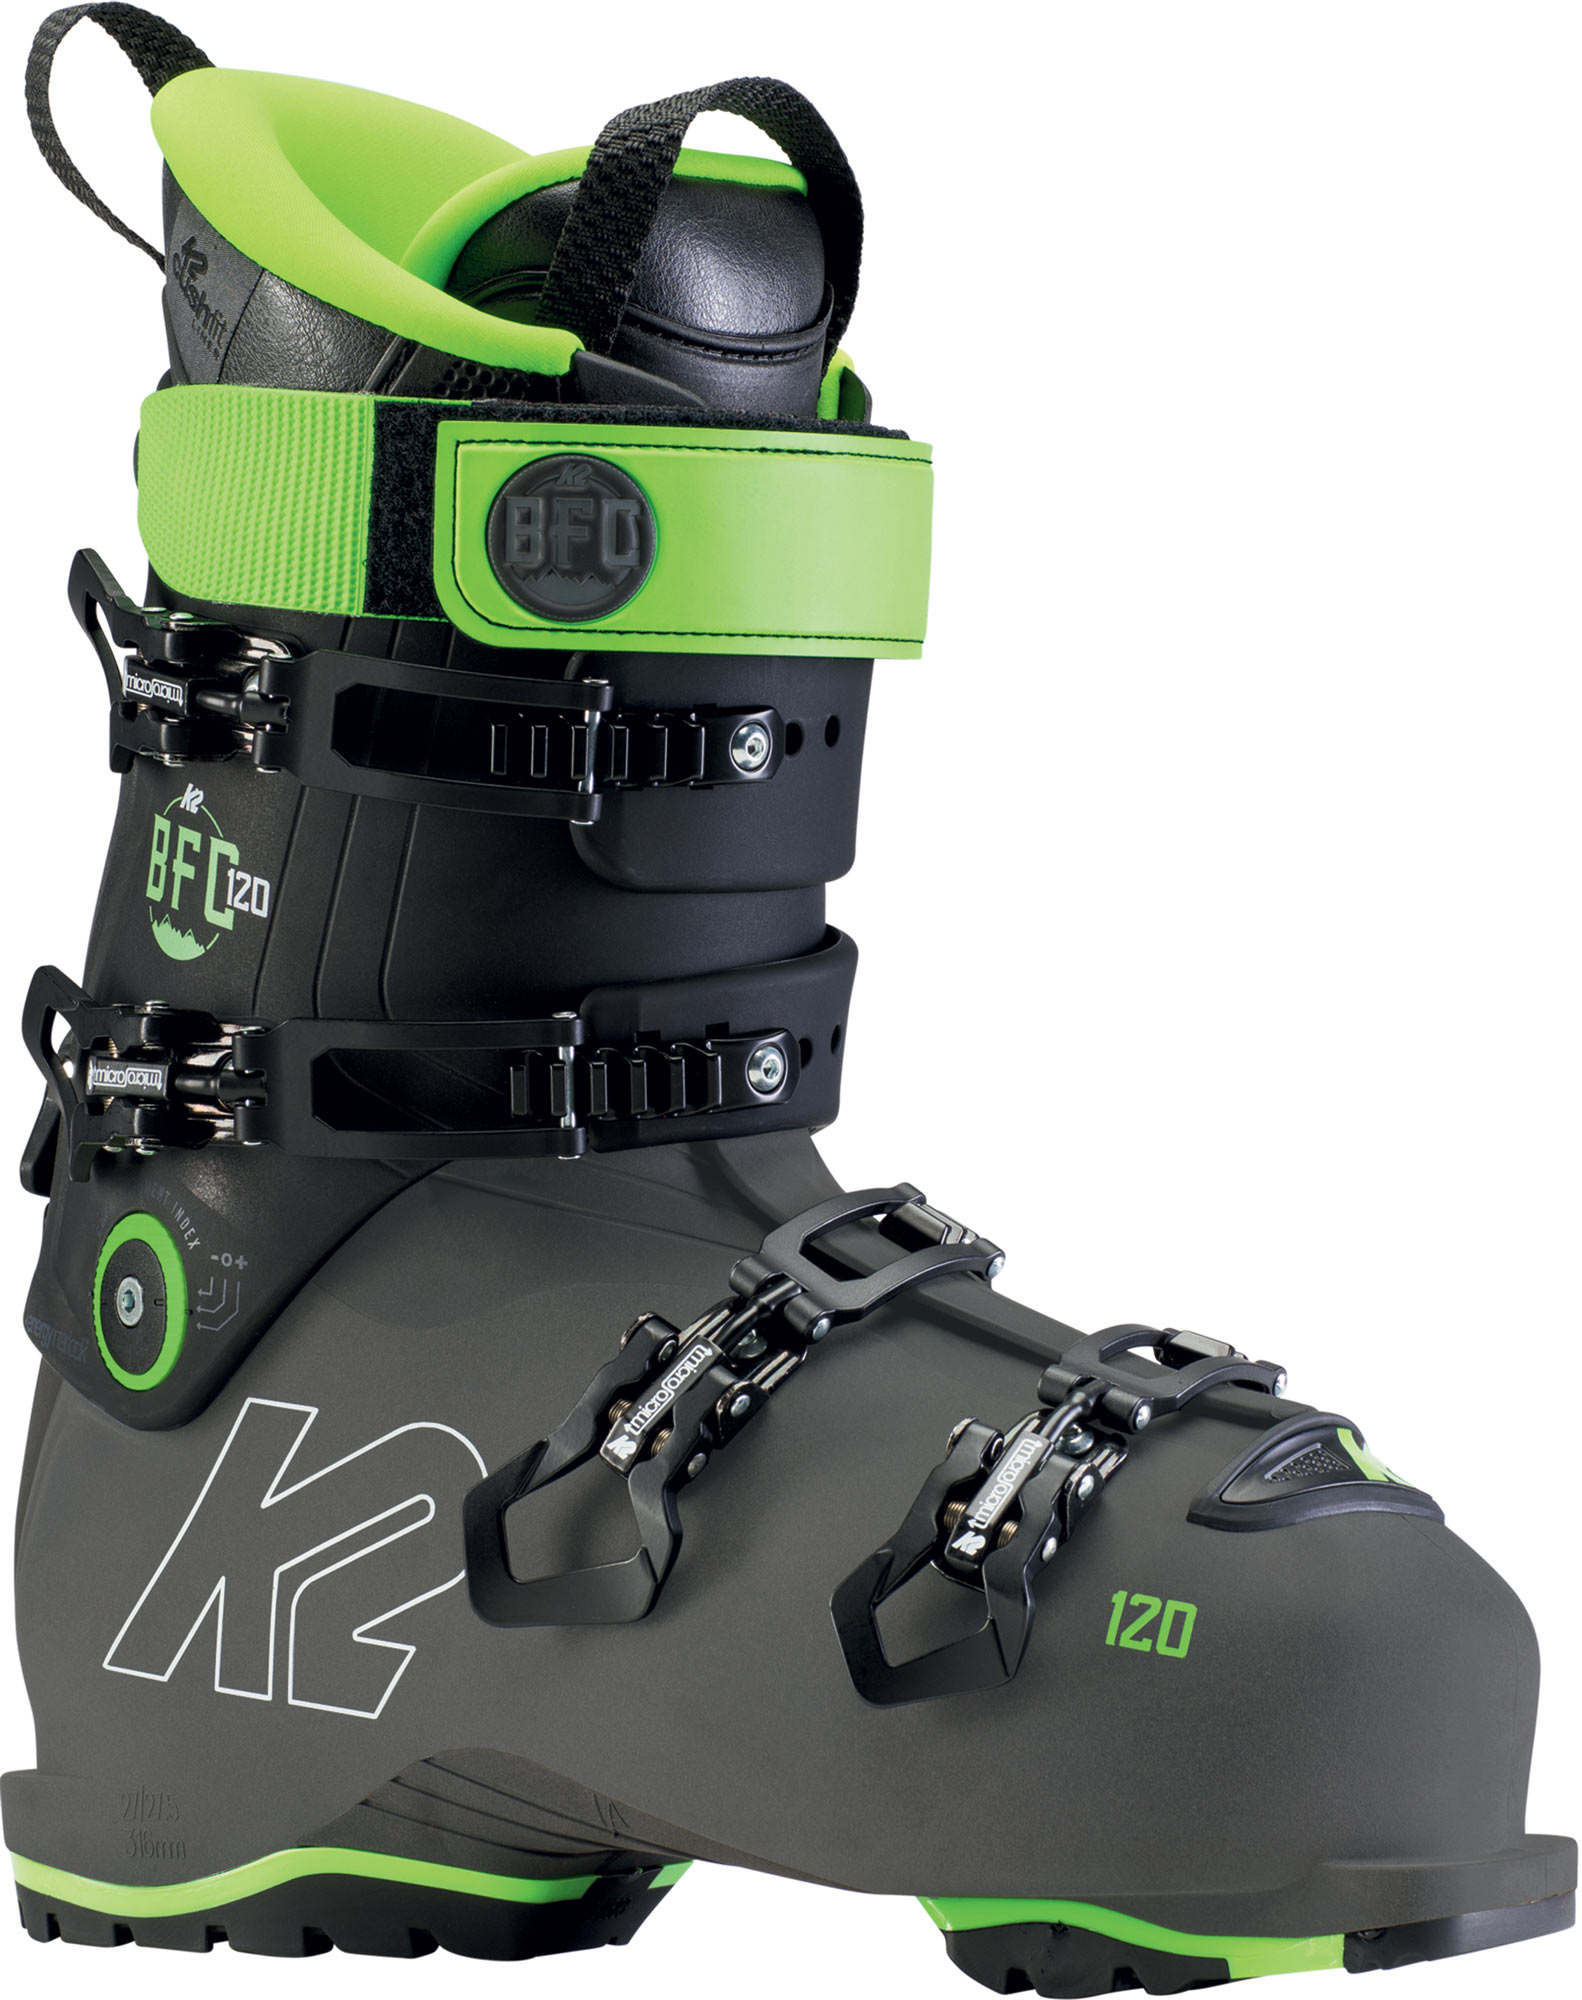 Ski all-mountain boots